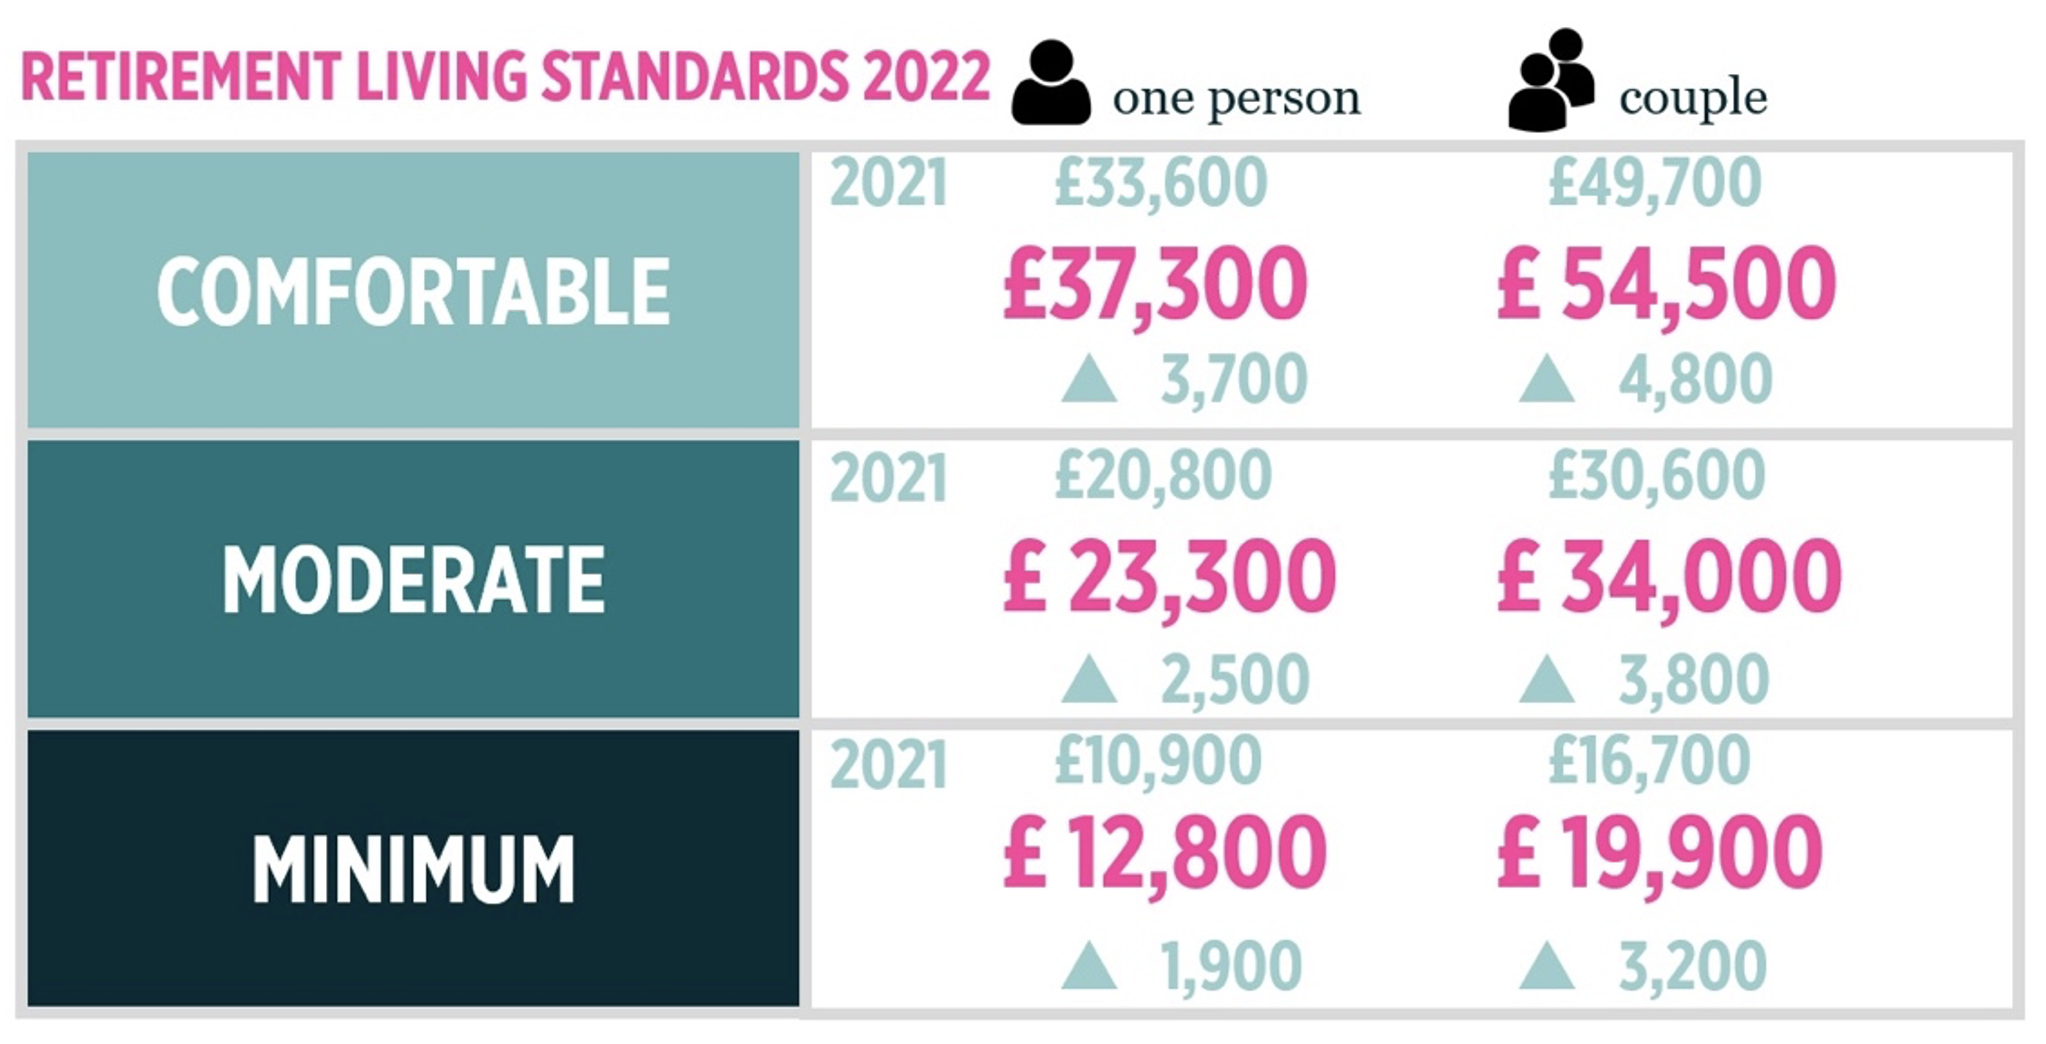 retirement living standards 2021 vs 2022